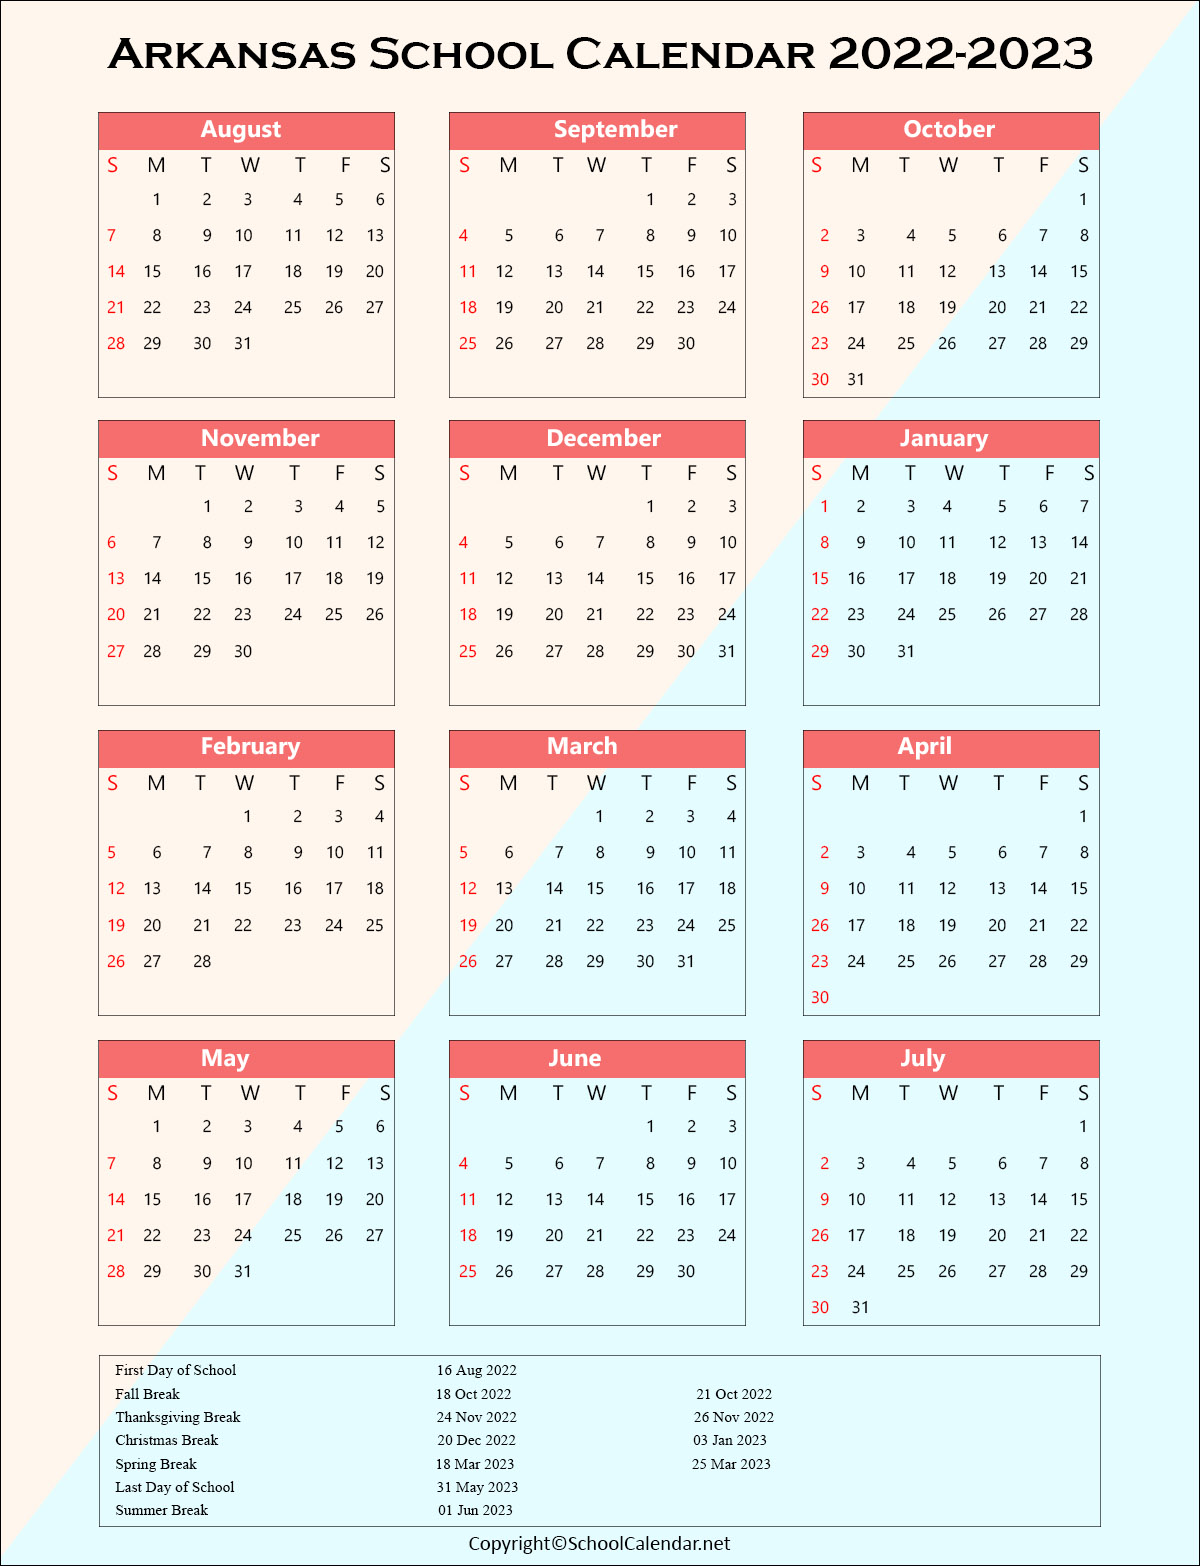 Arkansas School Holiday Calendar 2022